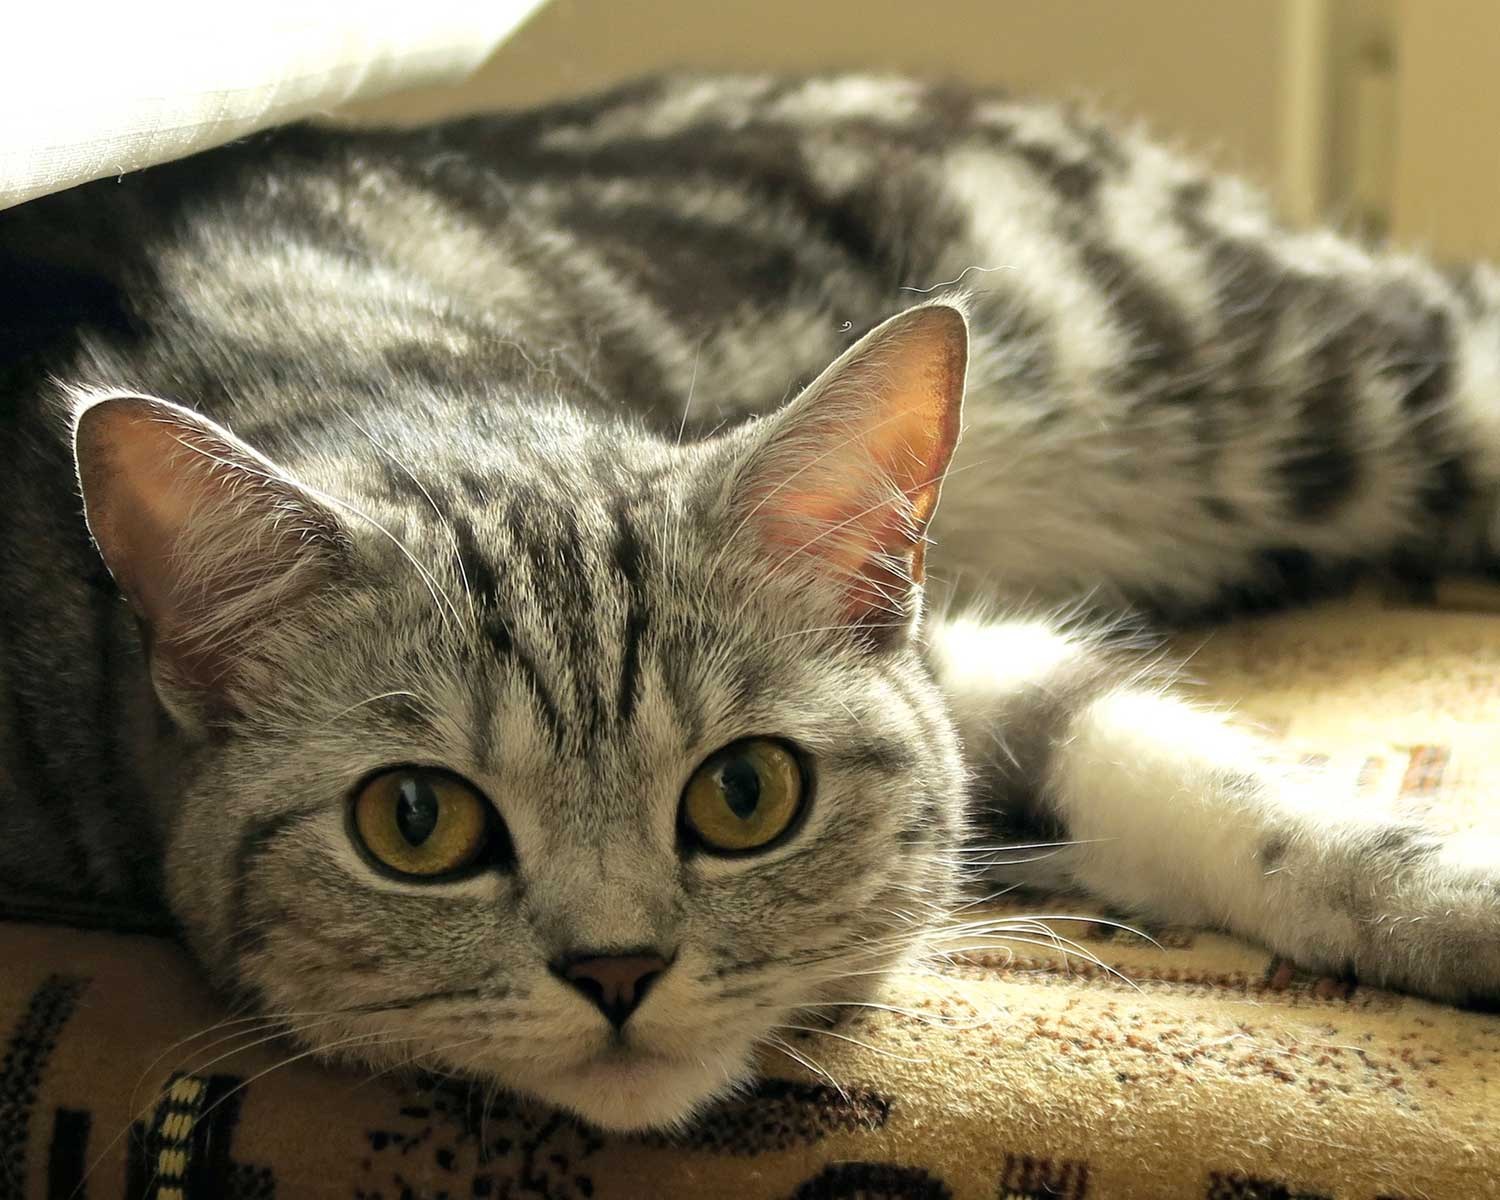 Шотландская кошка прямоухая полосатая - картинки и фото koshka.top